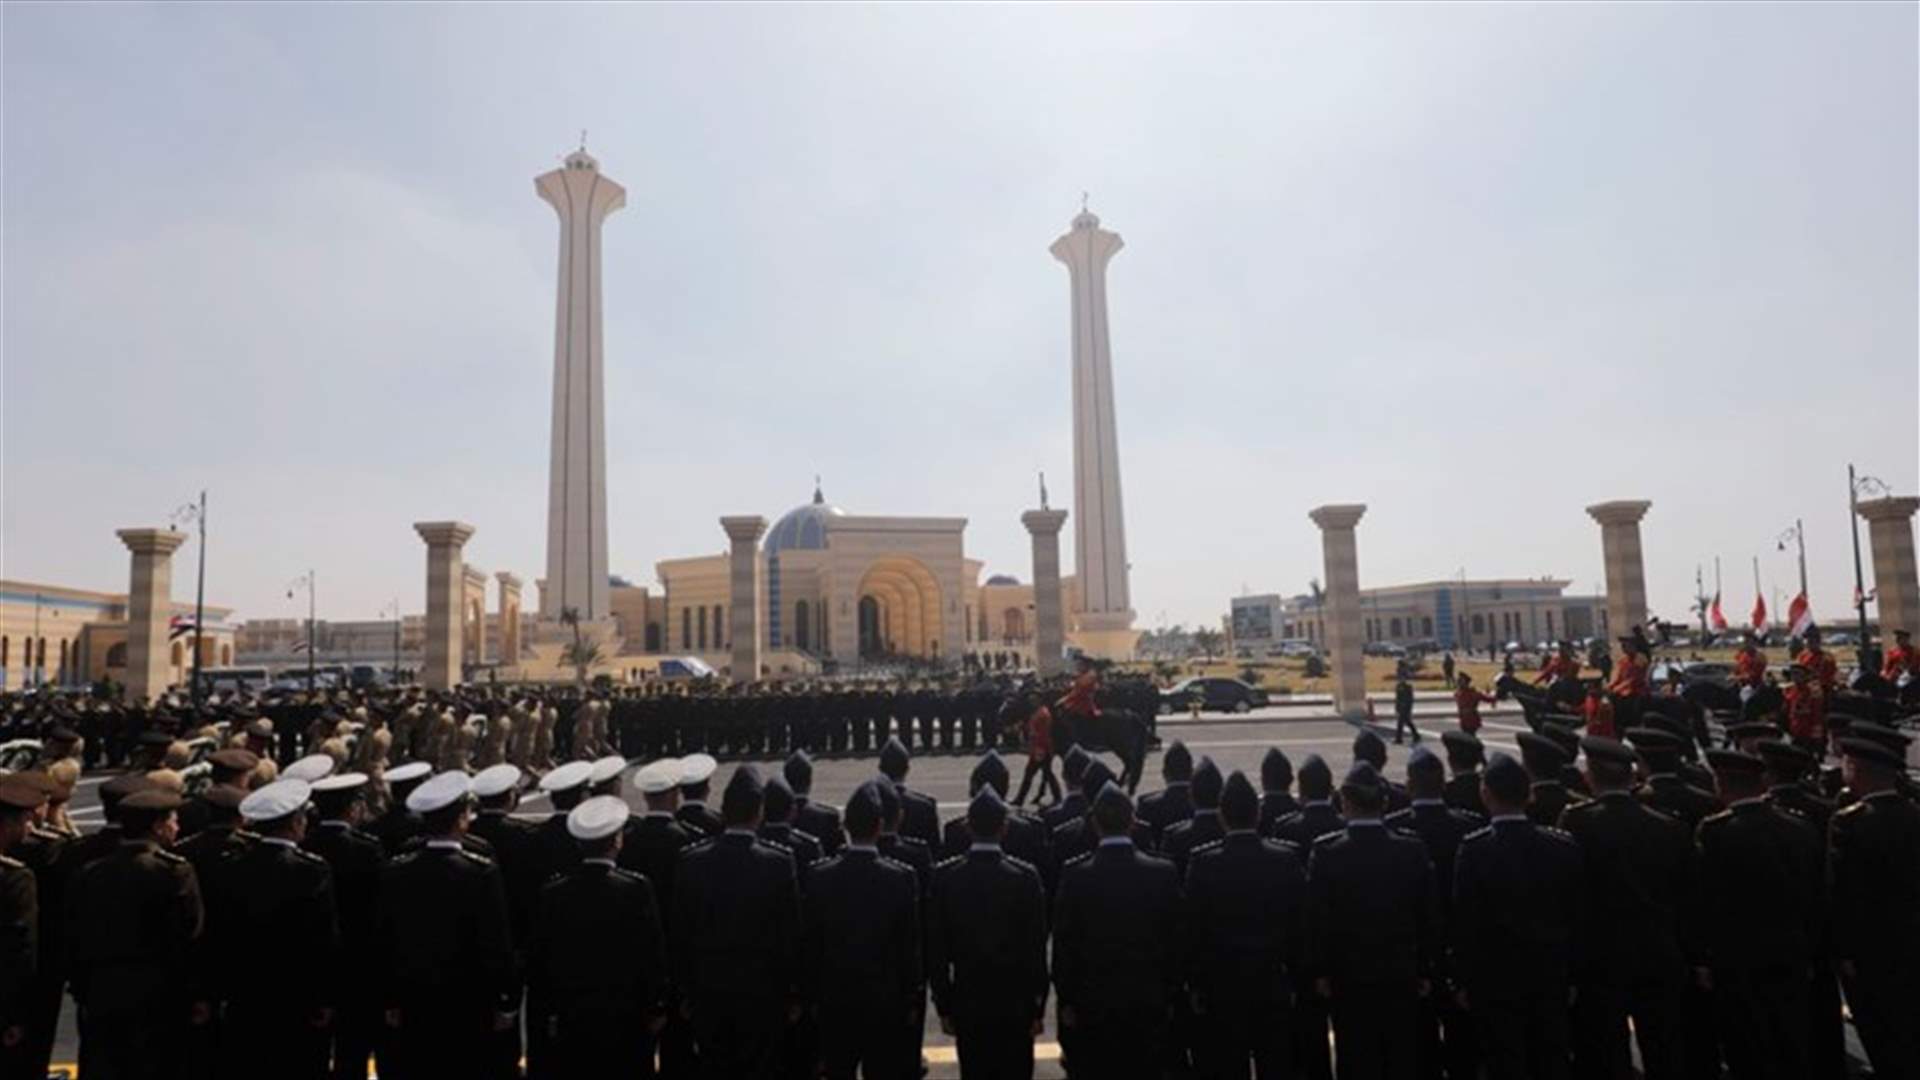 تشييع رئيس مصر الأسبق حسني مبارك في جنازة عسكرية (صوَر)